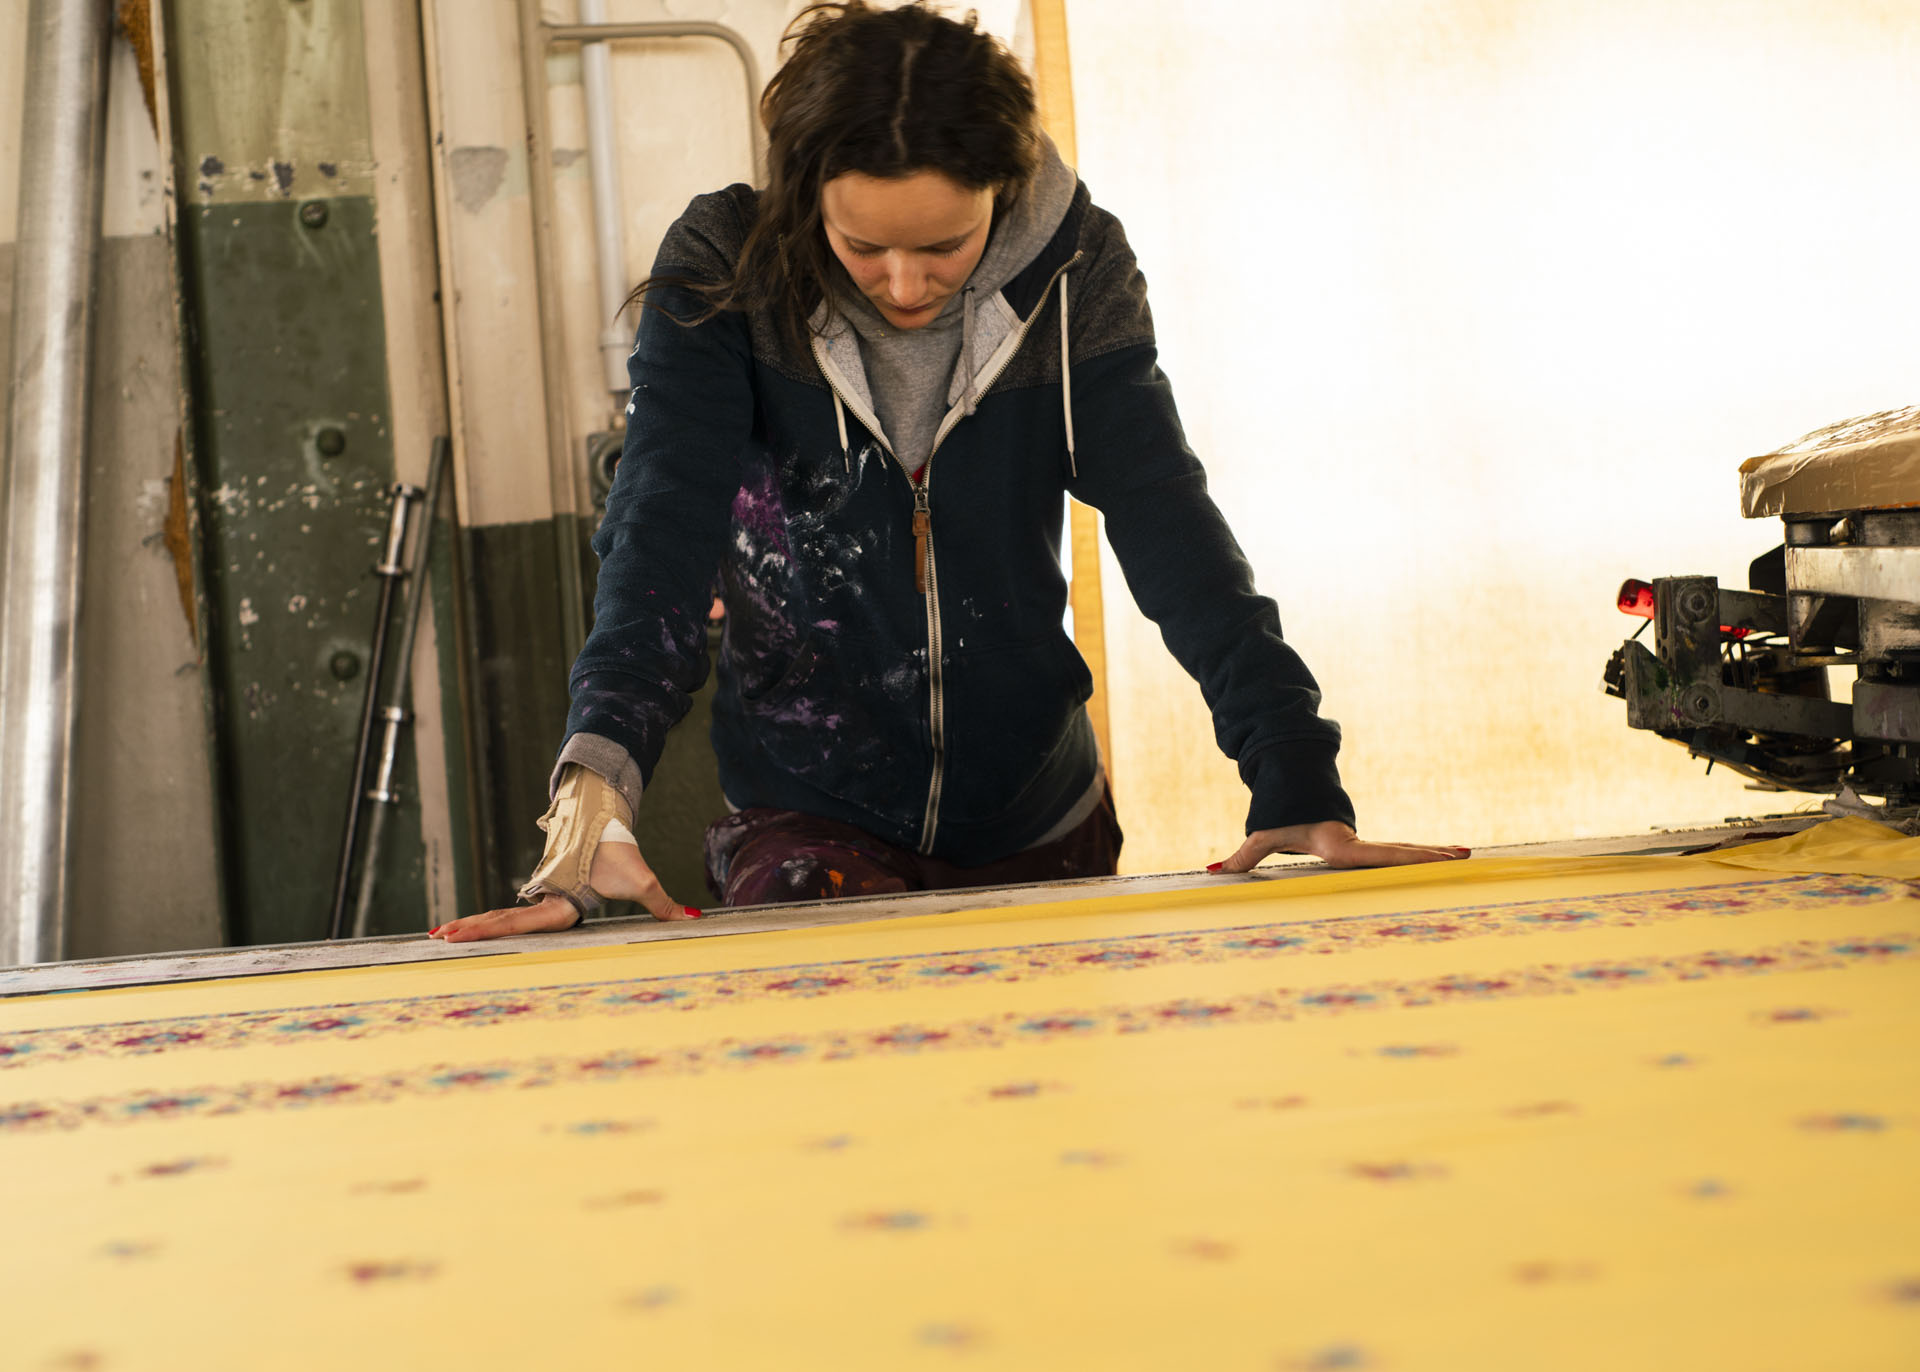 Mitarbeiterin der Textildruckerei TDS beim Überprüfen, ob die Rapporte des Siebdrucks exakt übereinander gedruckt wurden. 19.04.2021, Arbon, Schweiz. © Maidje Meergans